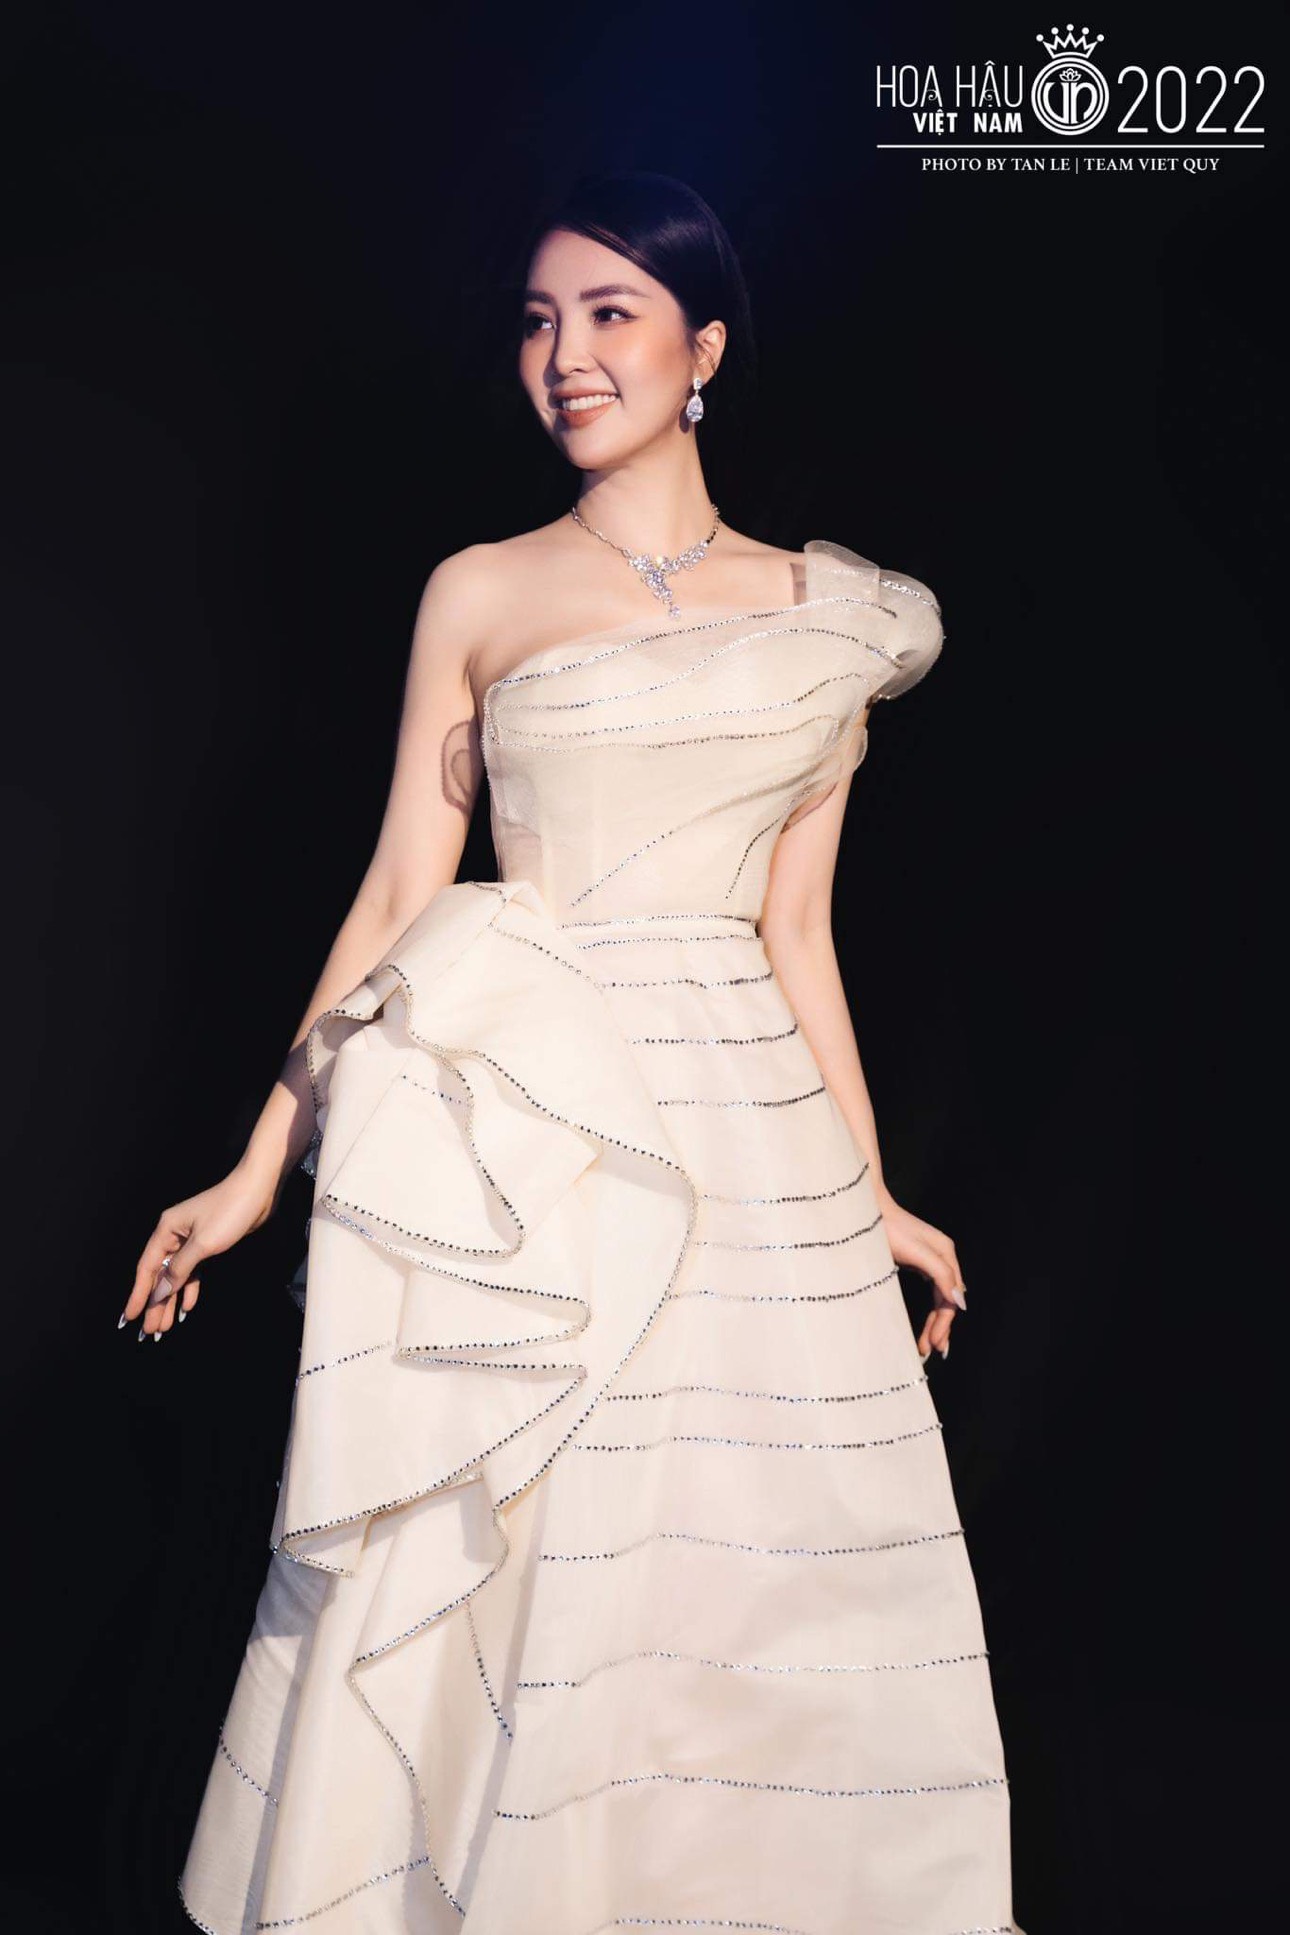 Giám khảo Hoa hậu Việt Nam 2022 - Á hậu Thụy Vân tiết lộ nguyên nhân Thanh Thủy đăng quang ngôi vị Hoa hậu, tiếc nuối nhất Hương Giang  - Ảnh 2.